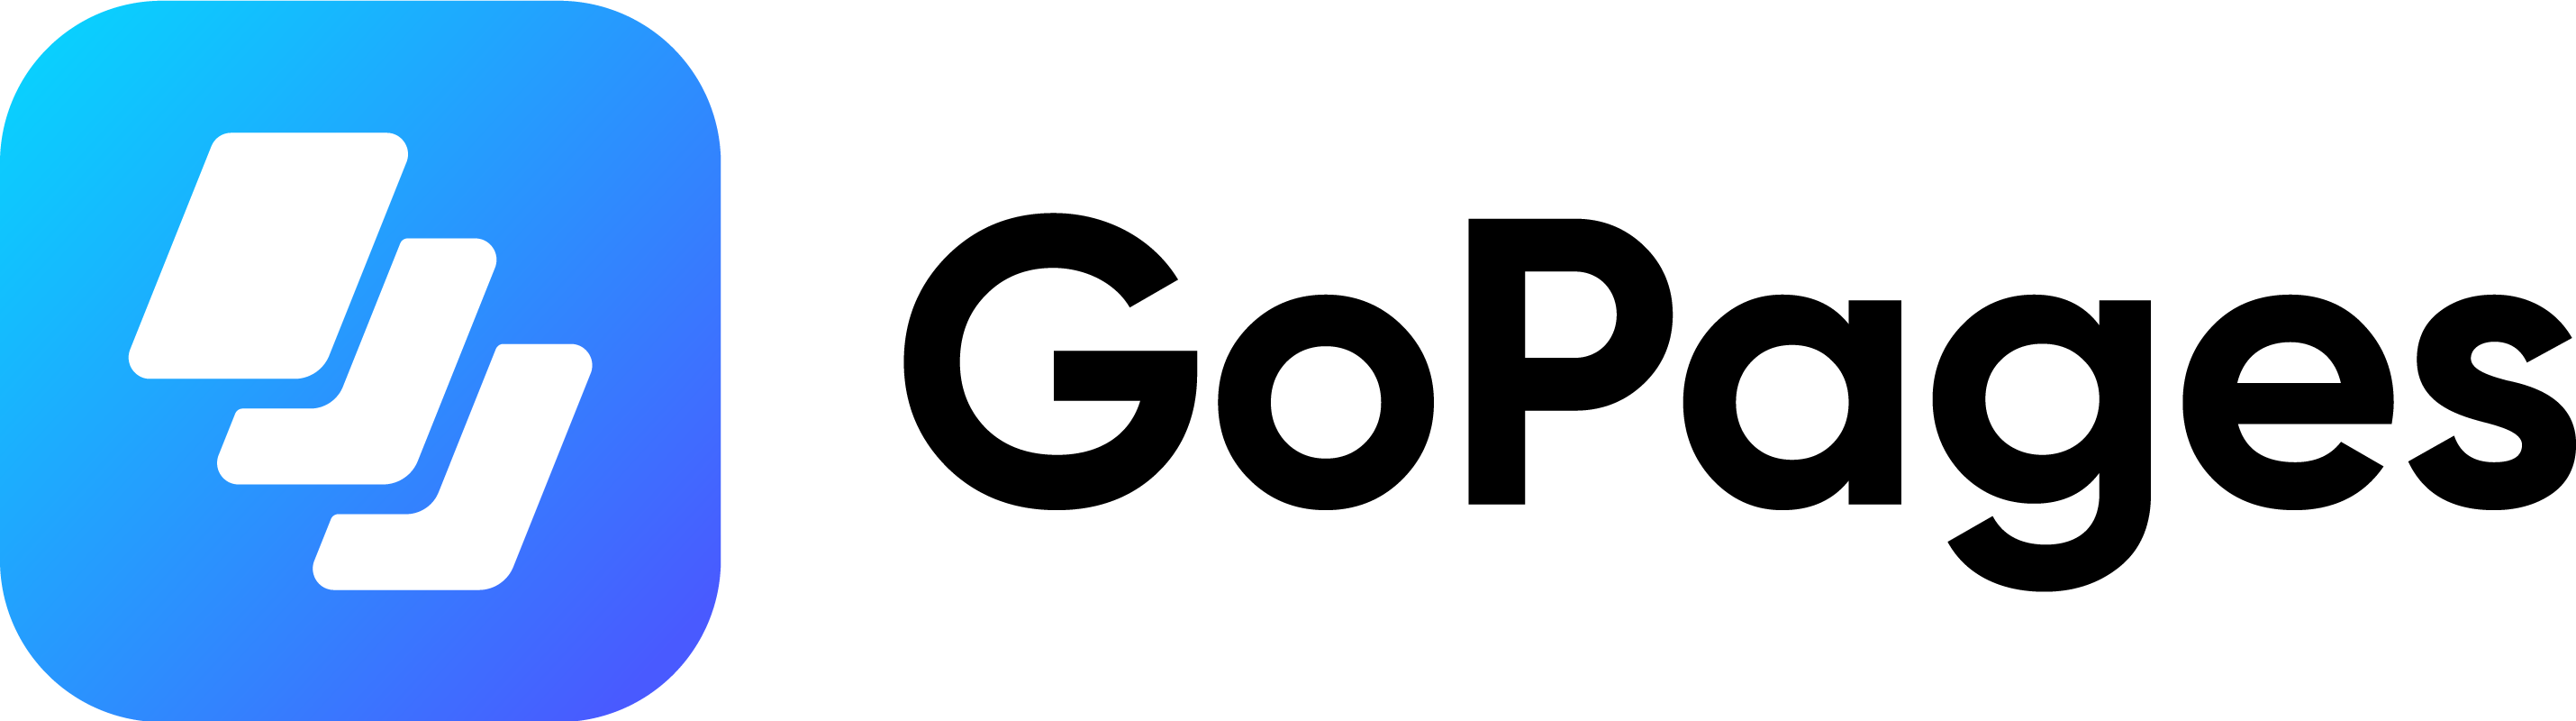 GoPages logo